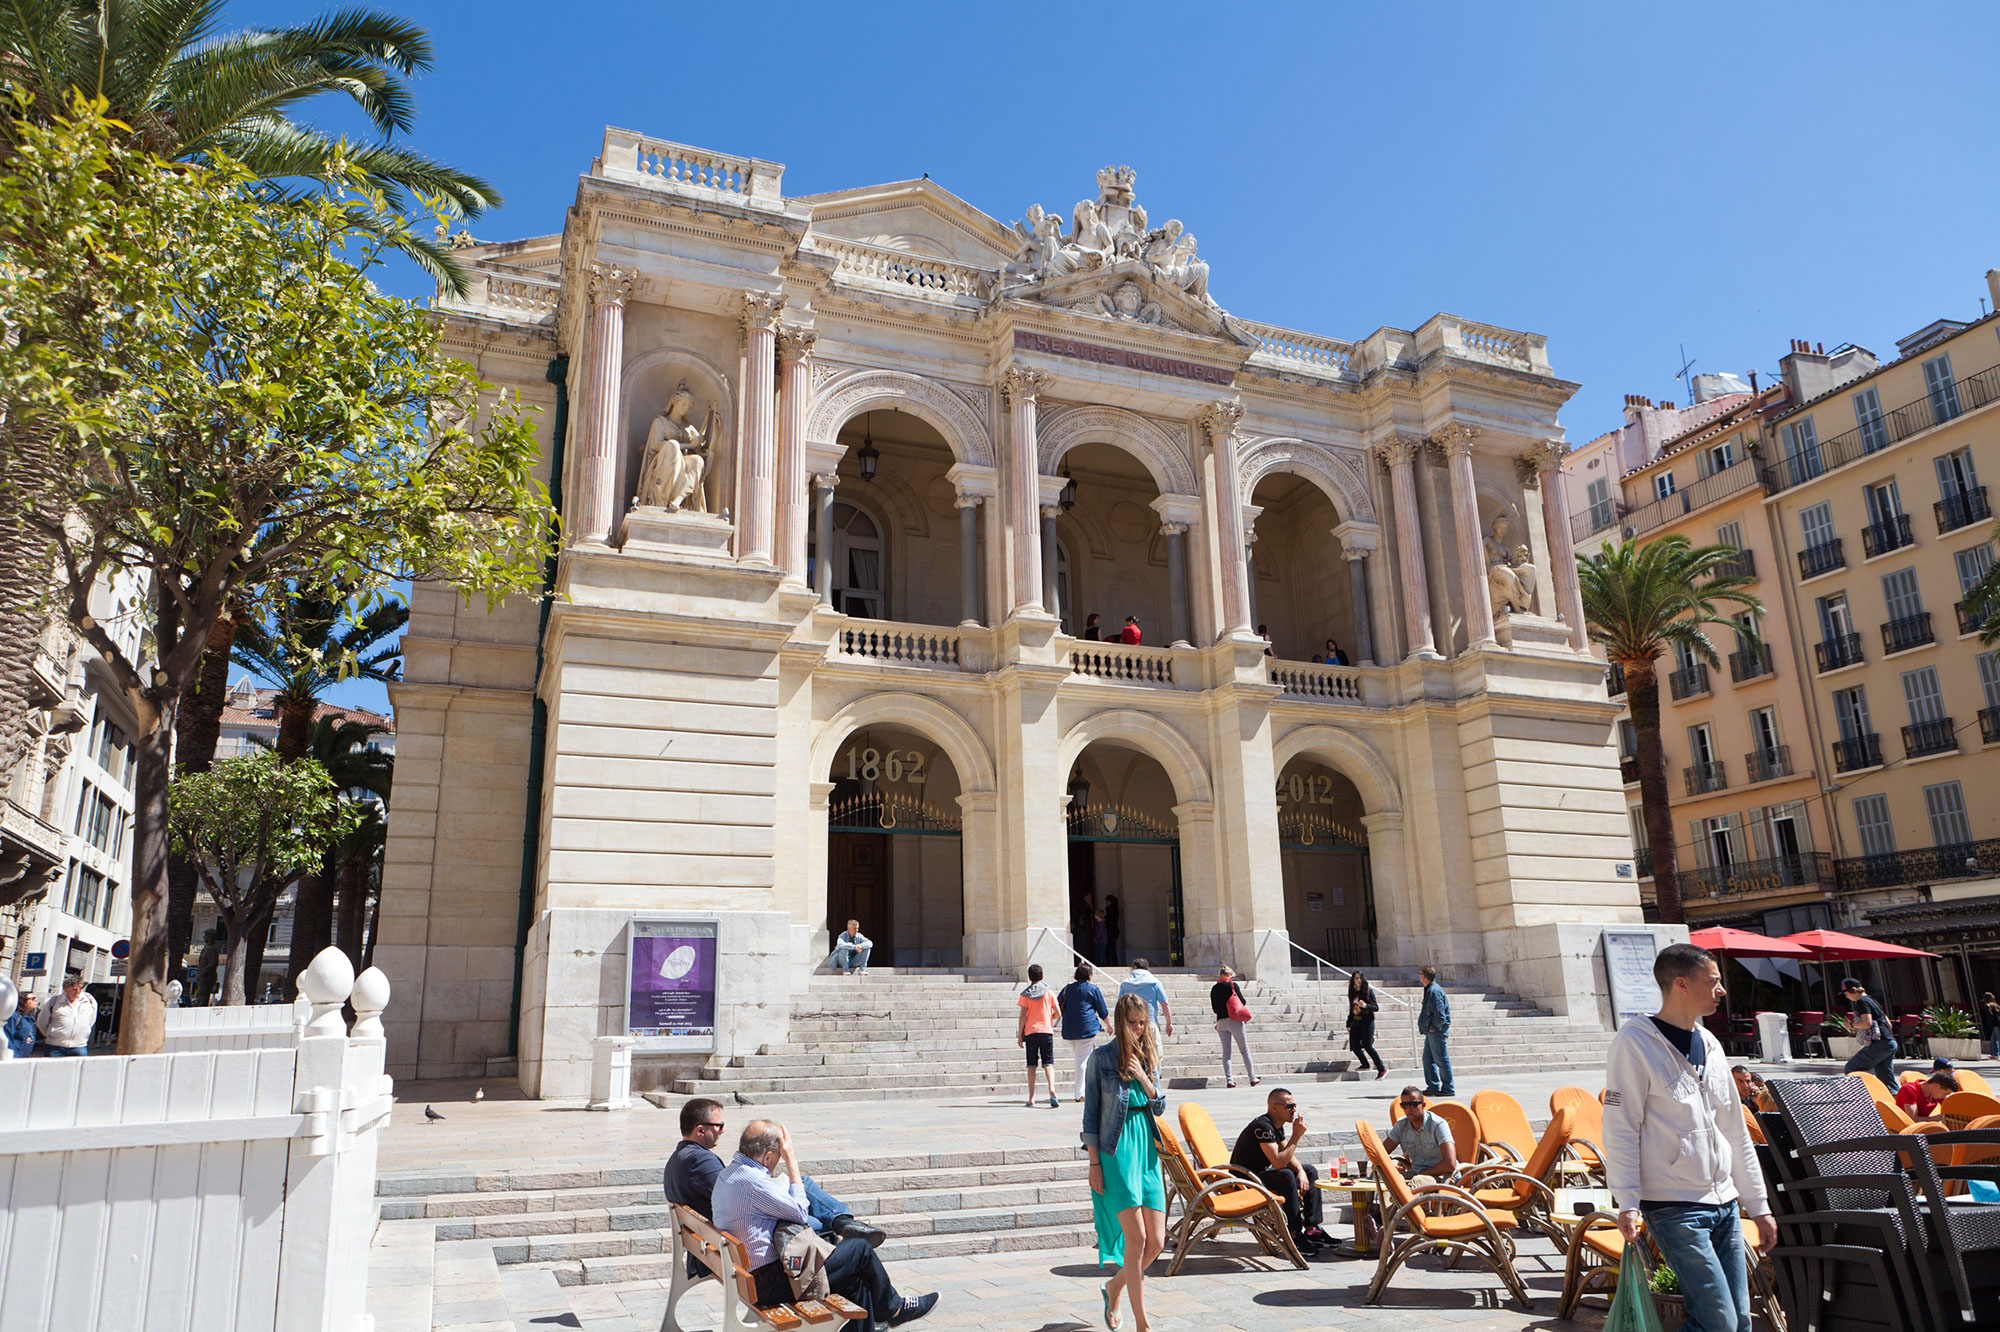 L'Opéra de Toulon : Un joyau historique